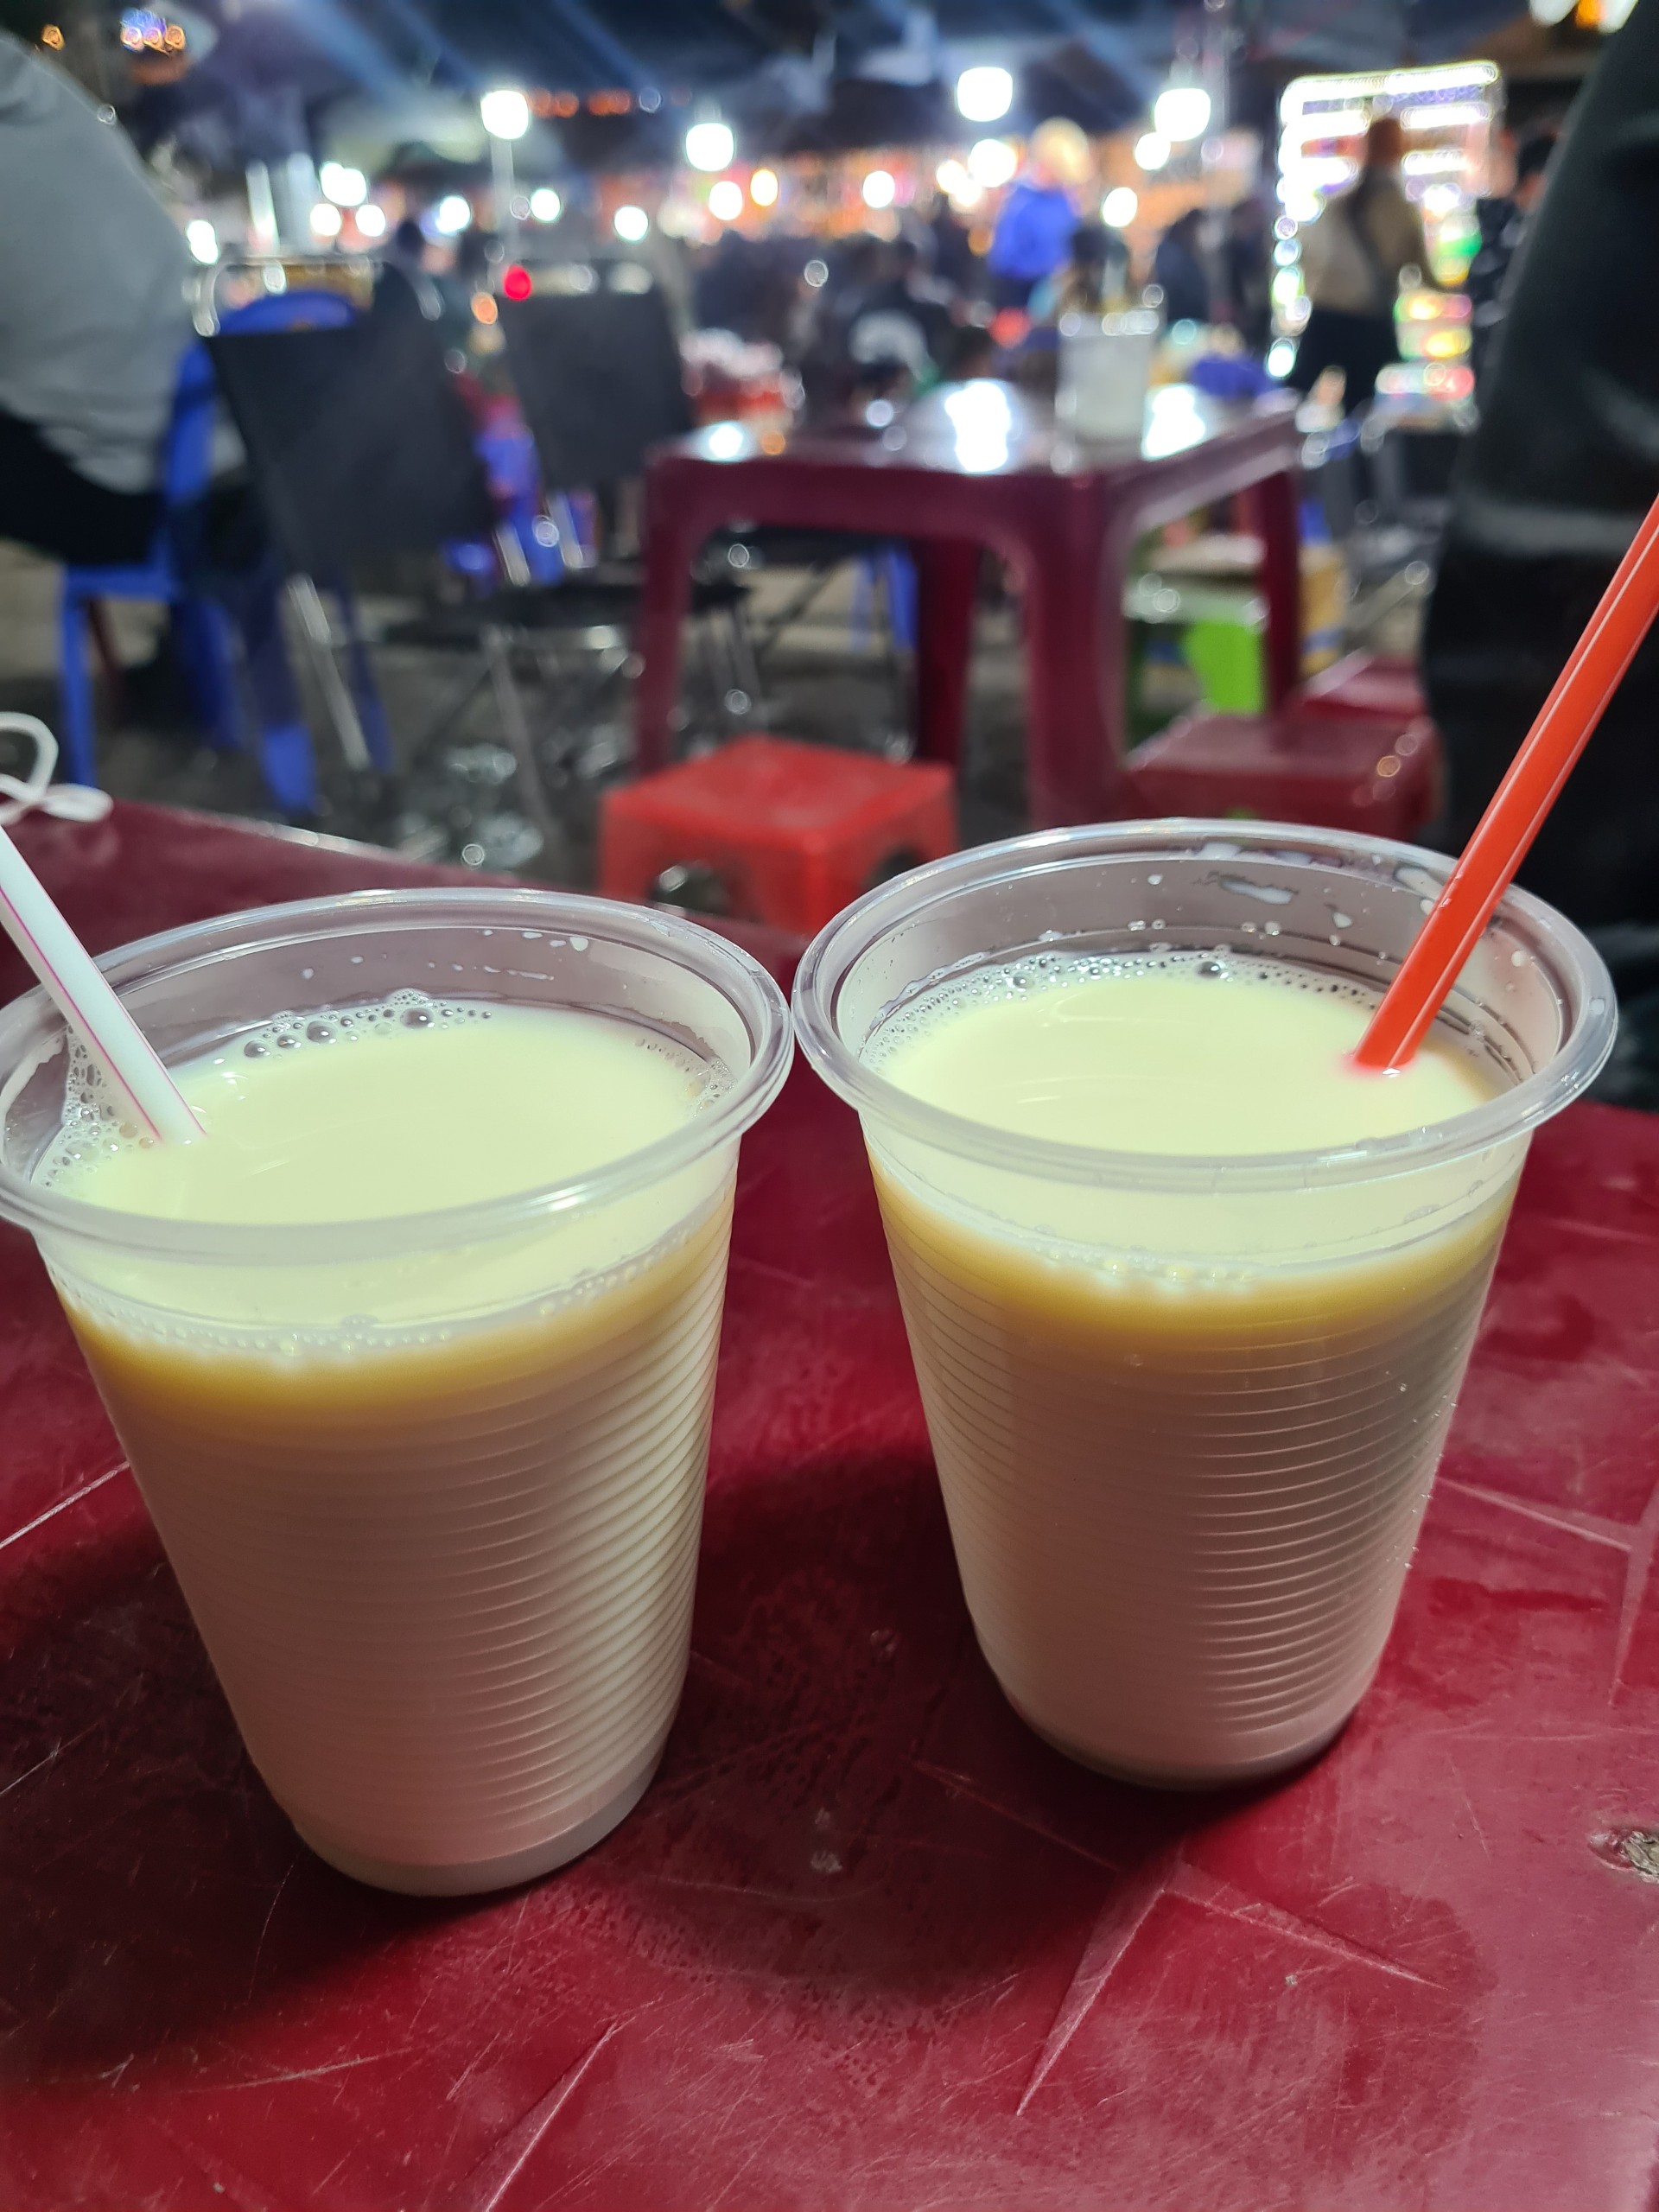 Sữa đậu nành nóng thơm ngon tại chợ đêm Đà Lạt 